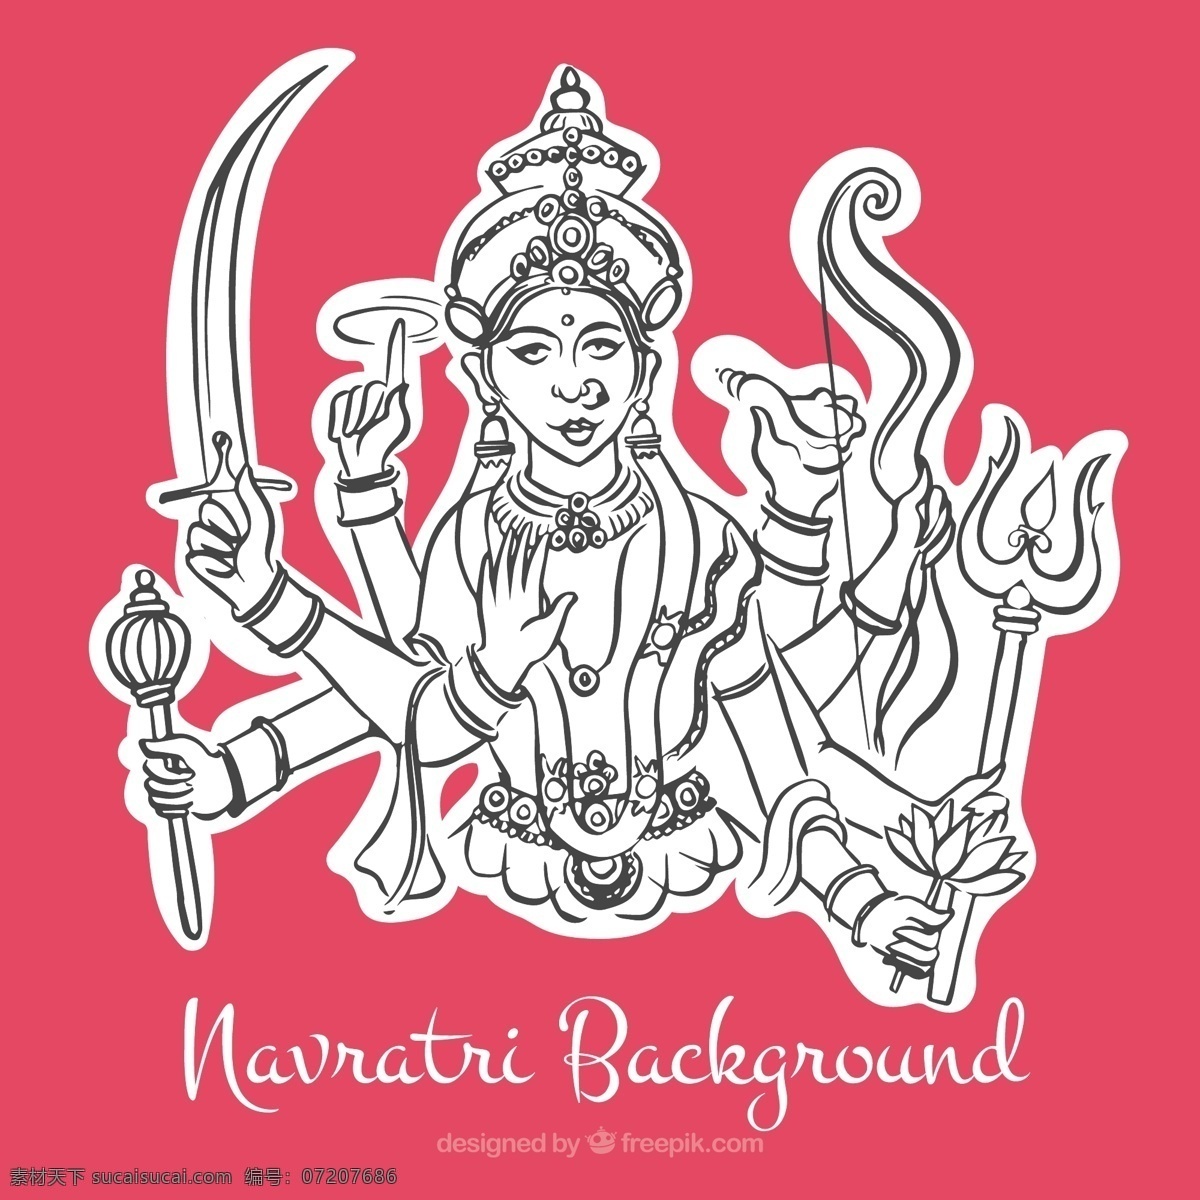 杜 迦 女神 navratri 粉红色 背景 说明 的背景下 一方面 手绘 粉红 庆典 宗教节日 印度 绘画 插图 文化 传统 宗教 绘制 印度教 精神 喜庆 素描 写生